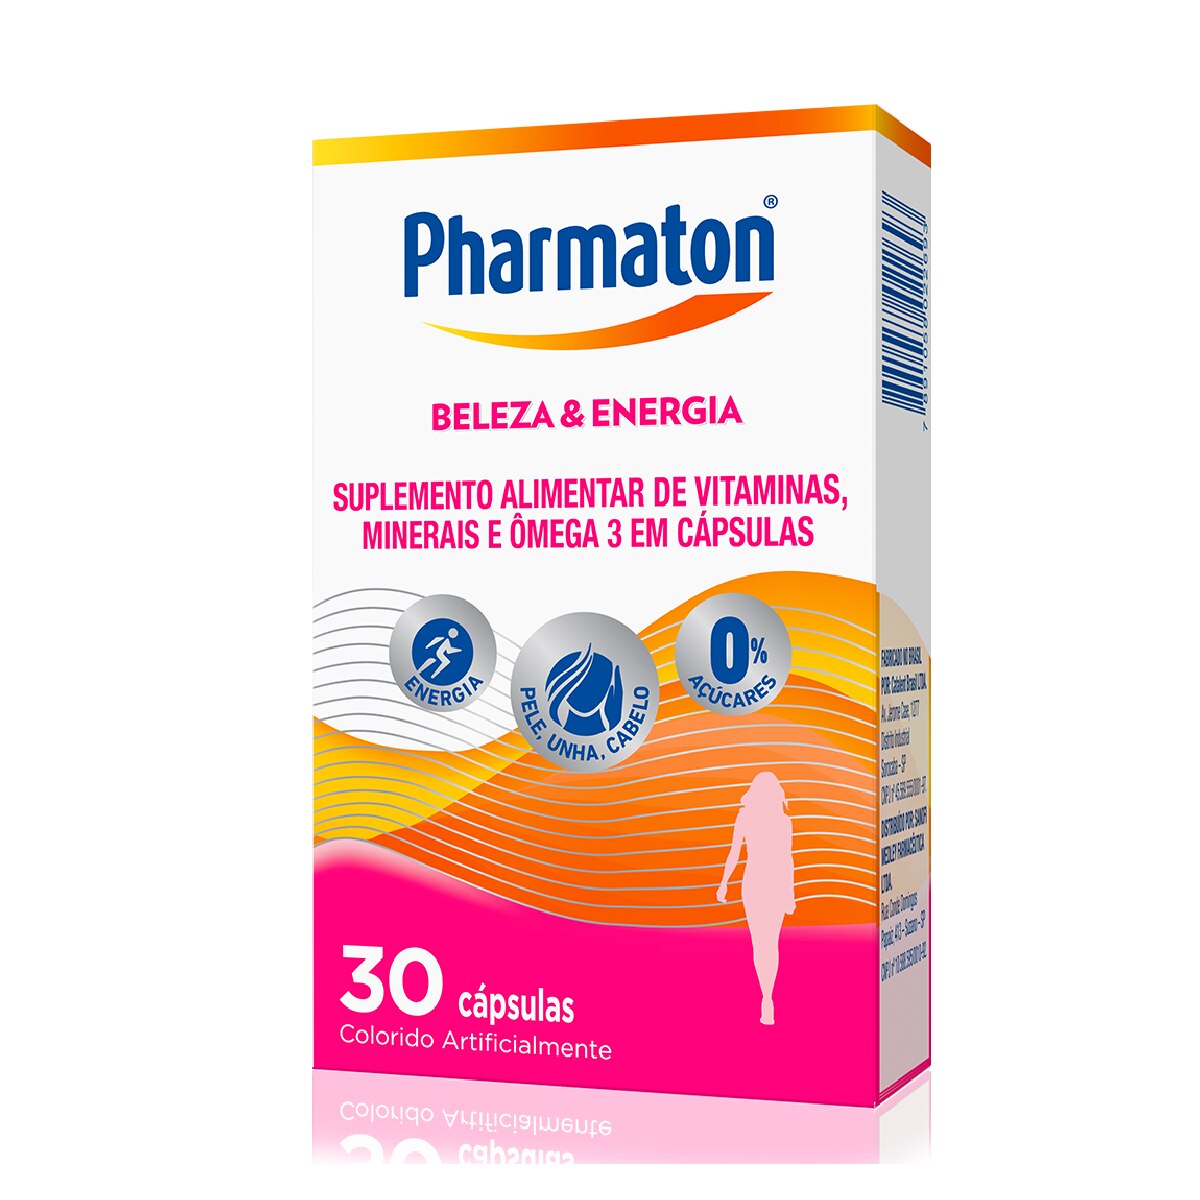 Pharmaton Beleza & Energia 30 Capsulas